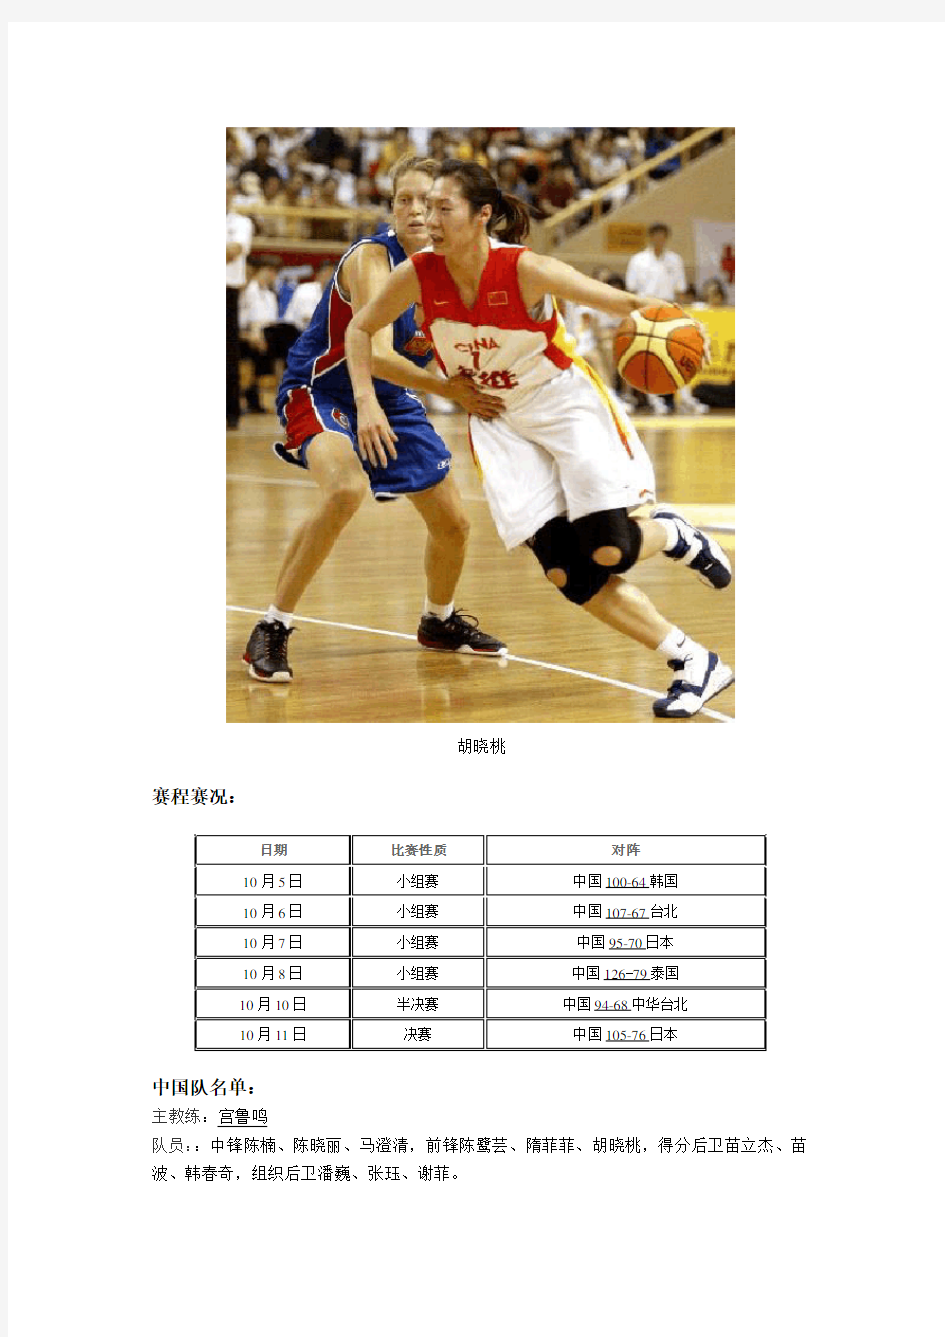 中国女篮亚锦赛成绩之2001年